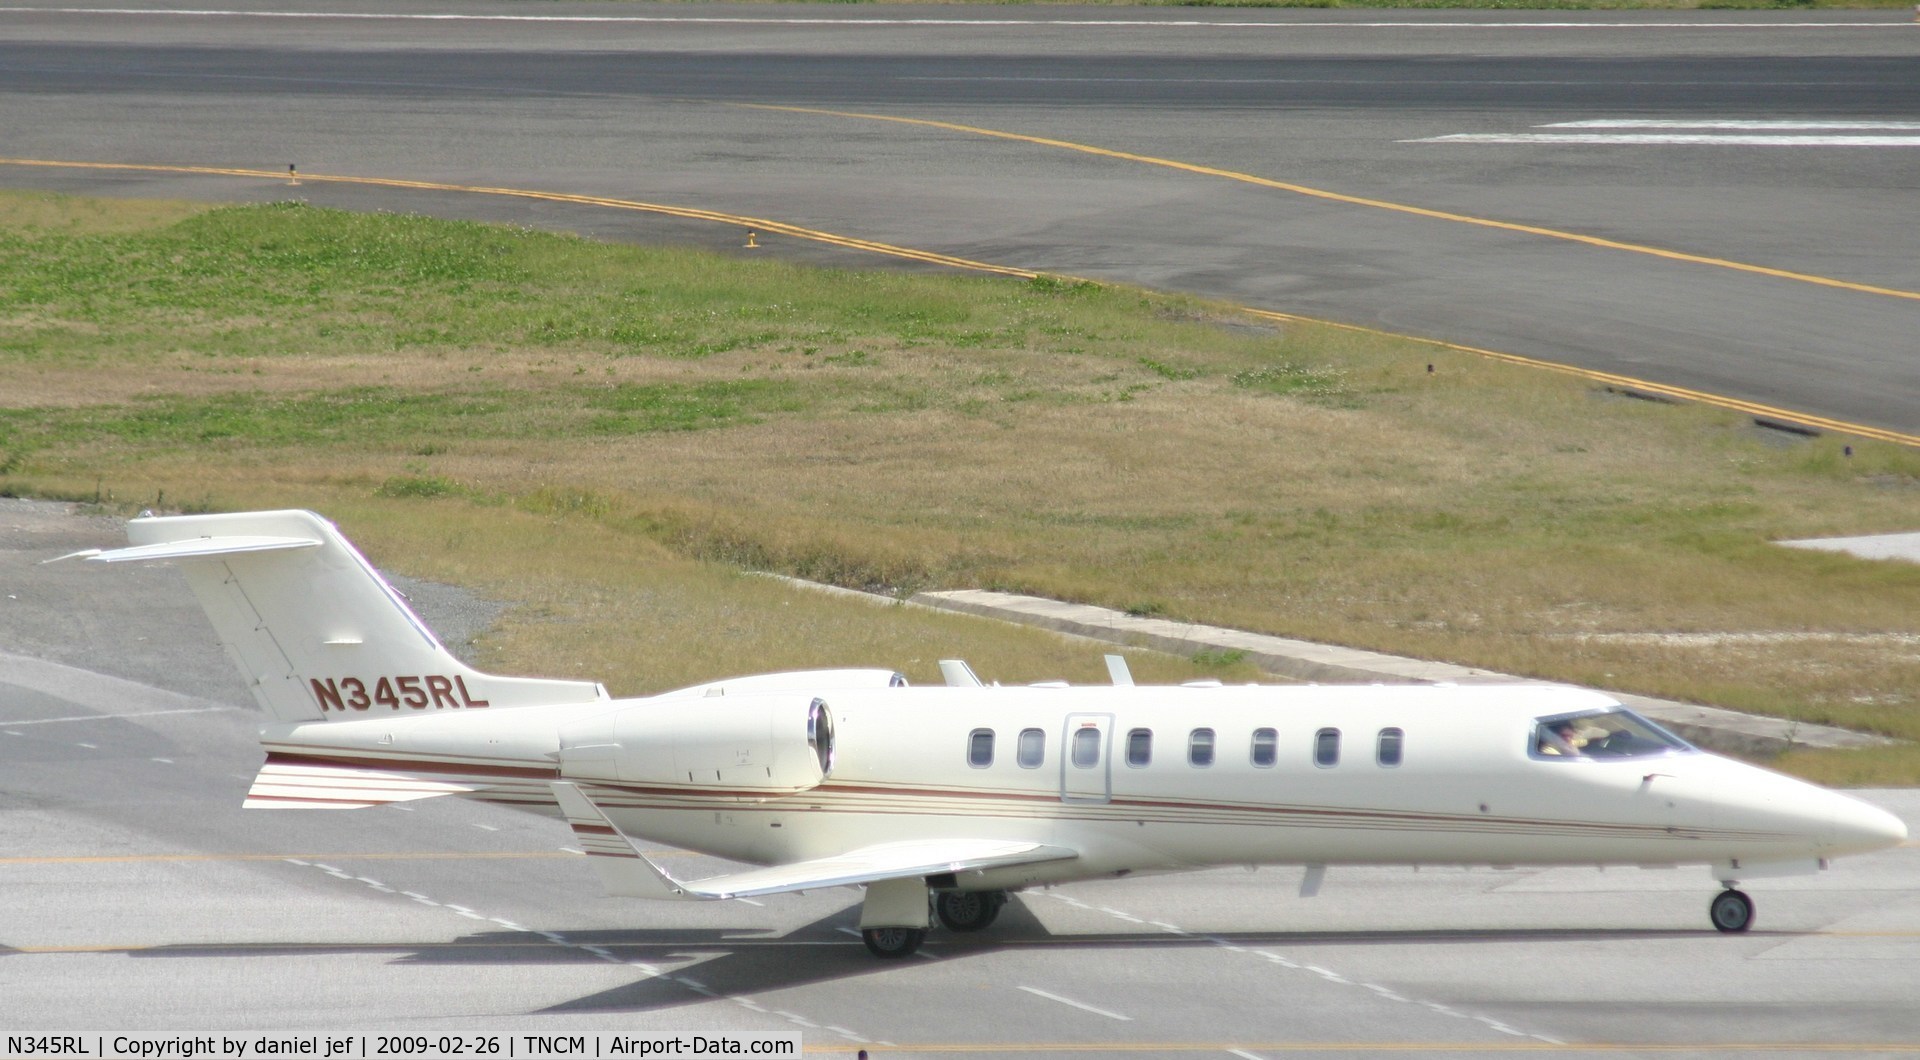 N345RL, 2001 Learjet 45 C/N 180, taxing runway 10